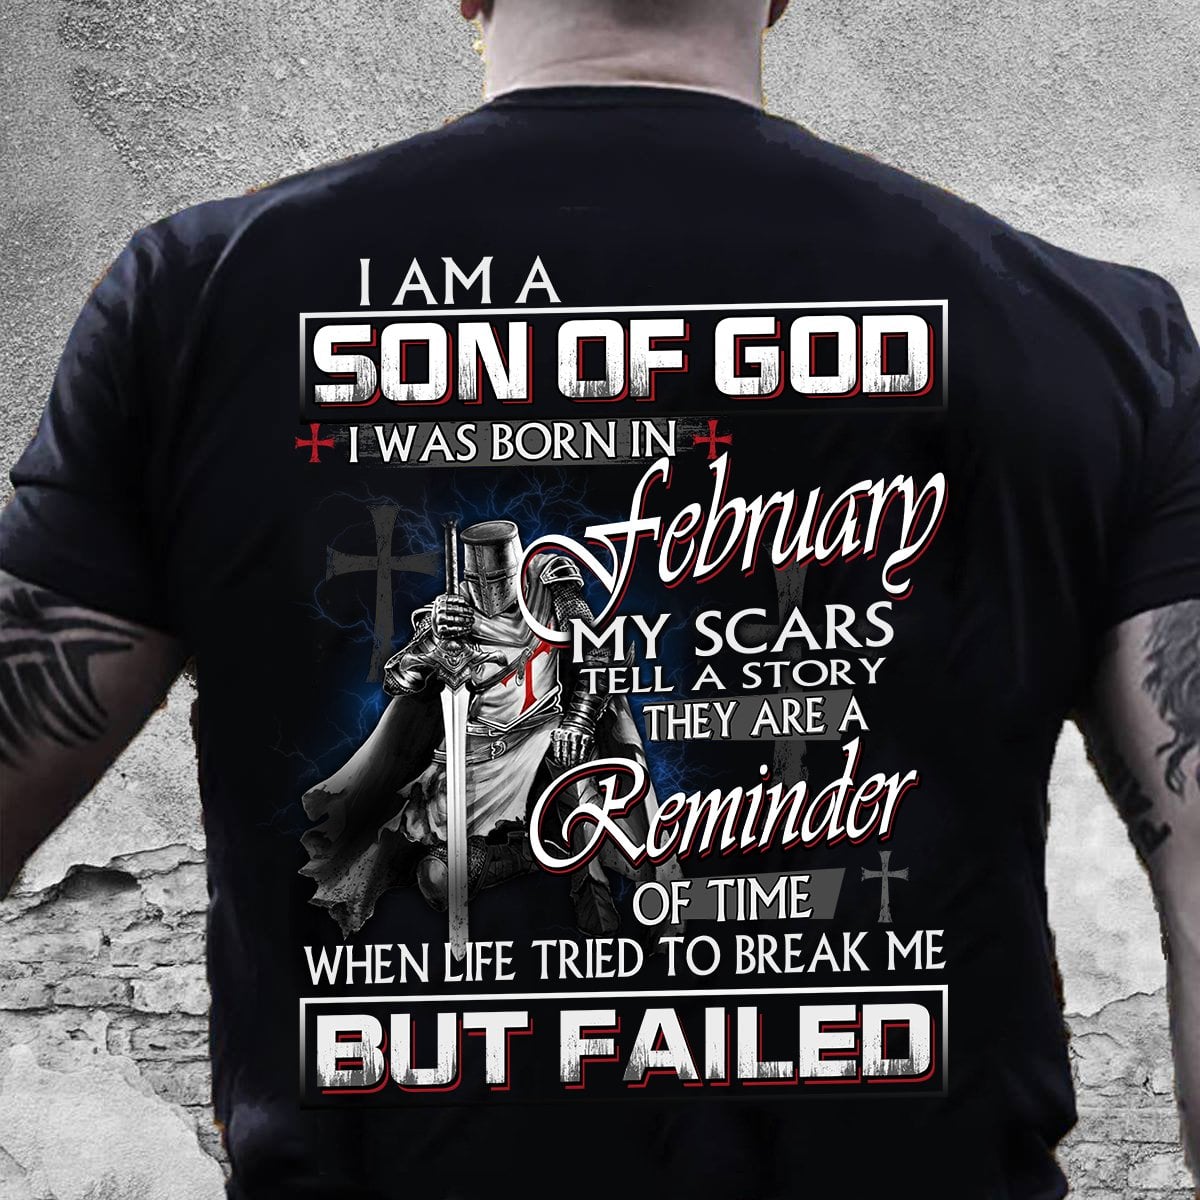 I am a son of god I was born in February - God's knight